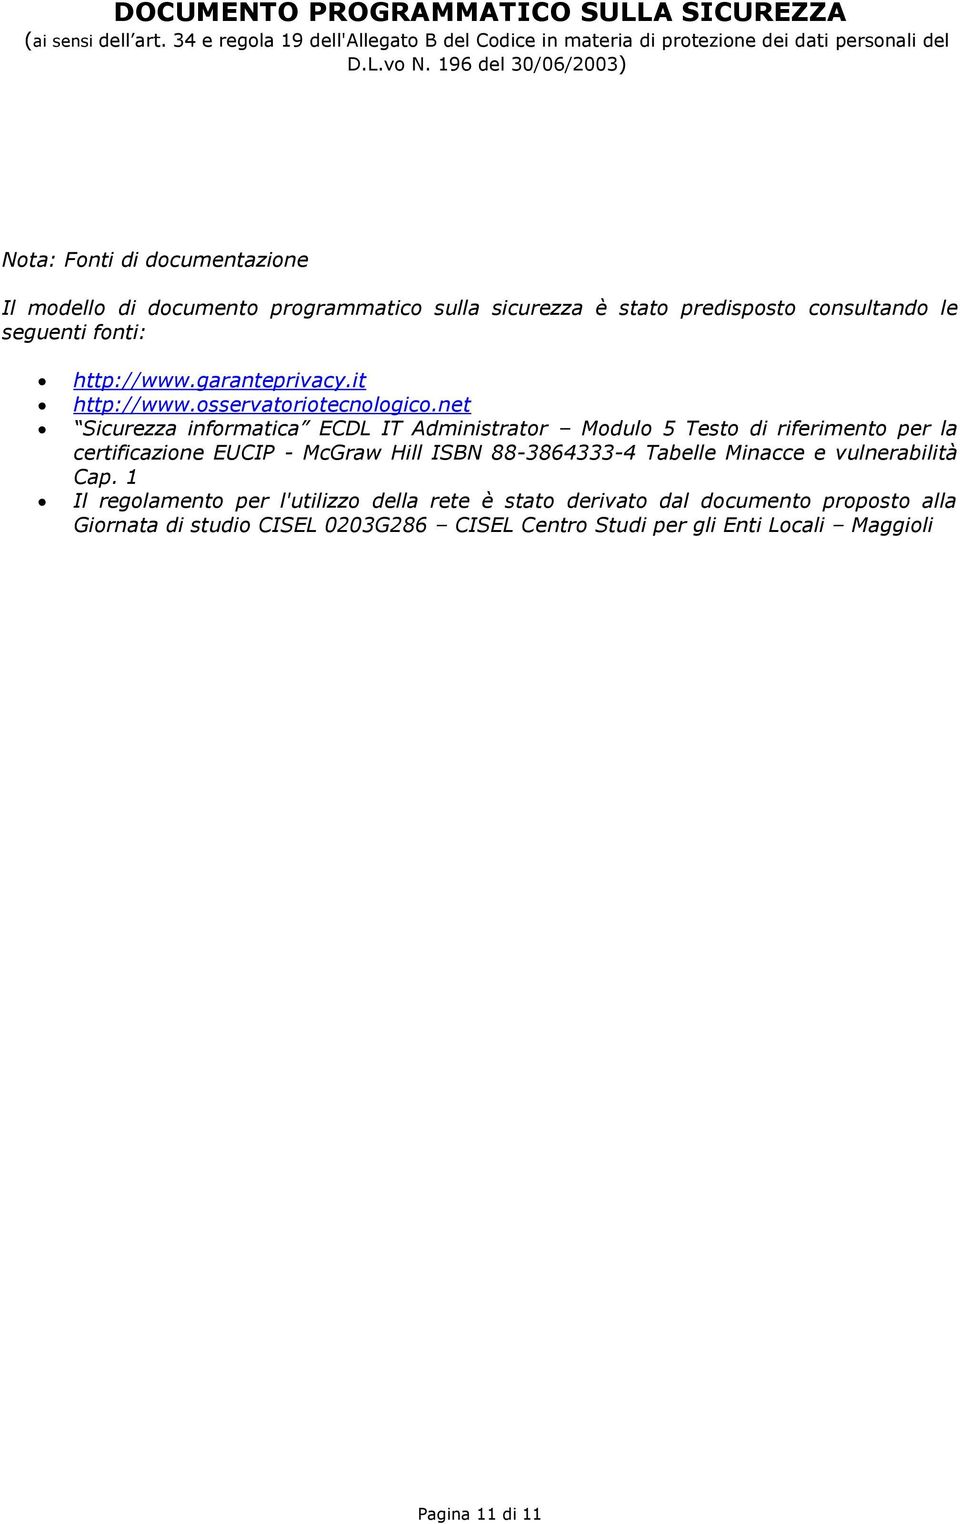 net Sicurezza informatica ECDL IT Administrator Modulo 5 Testo di riferimento per la certificazione EUCIP - McGraw Hill ISBN 88-3864333-4